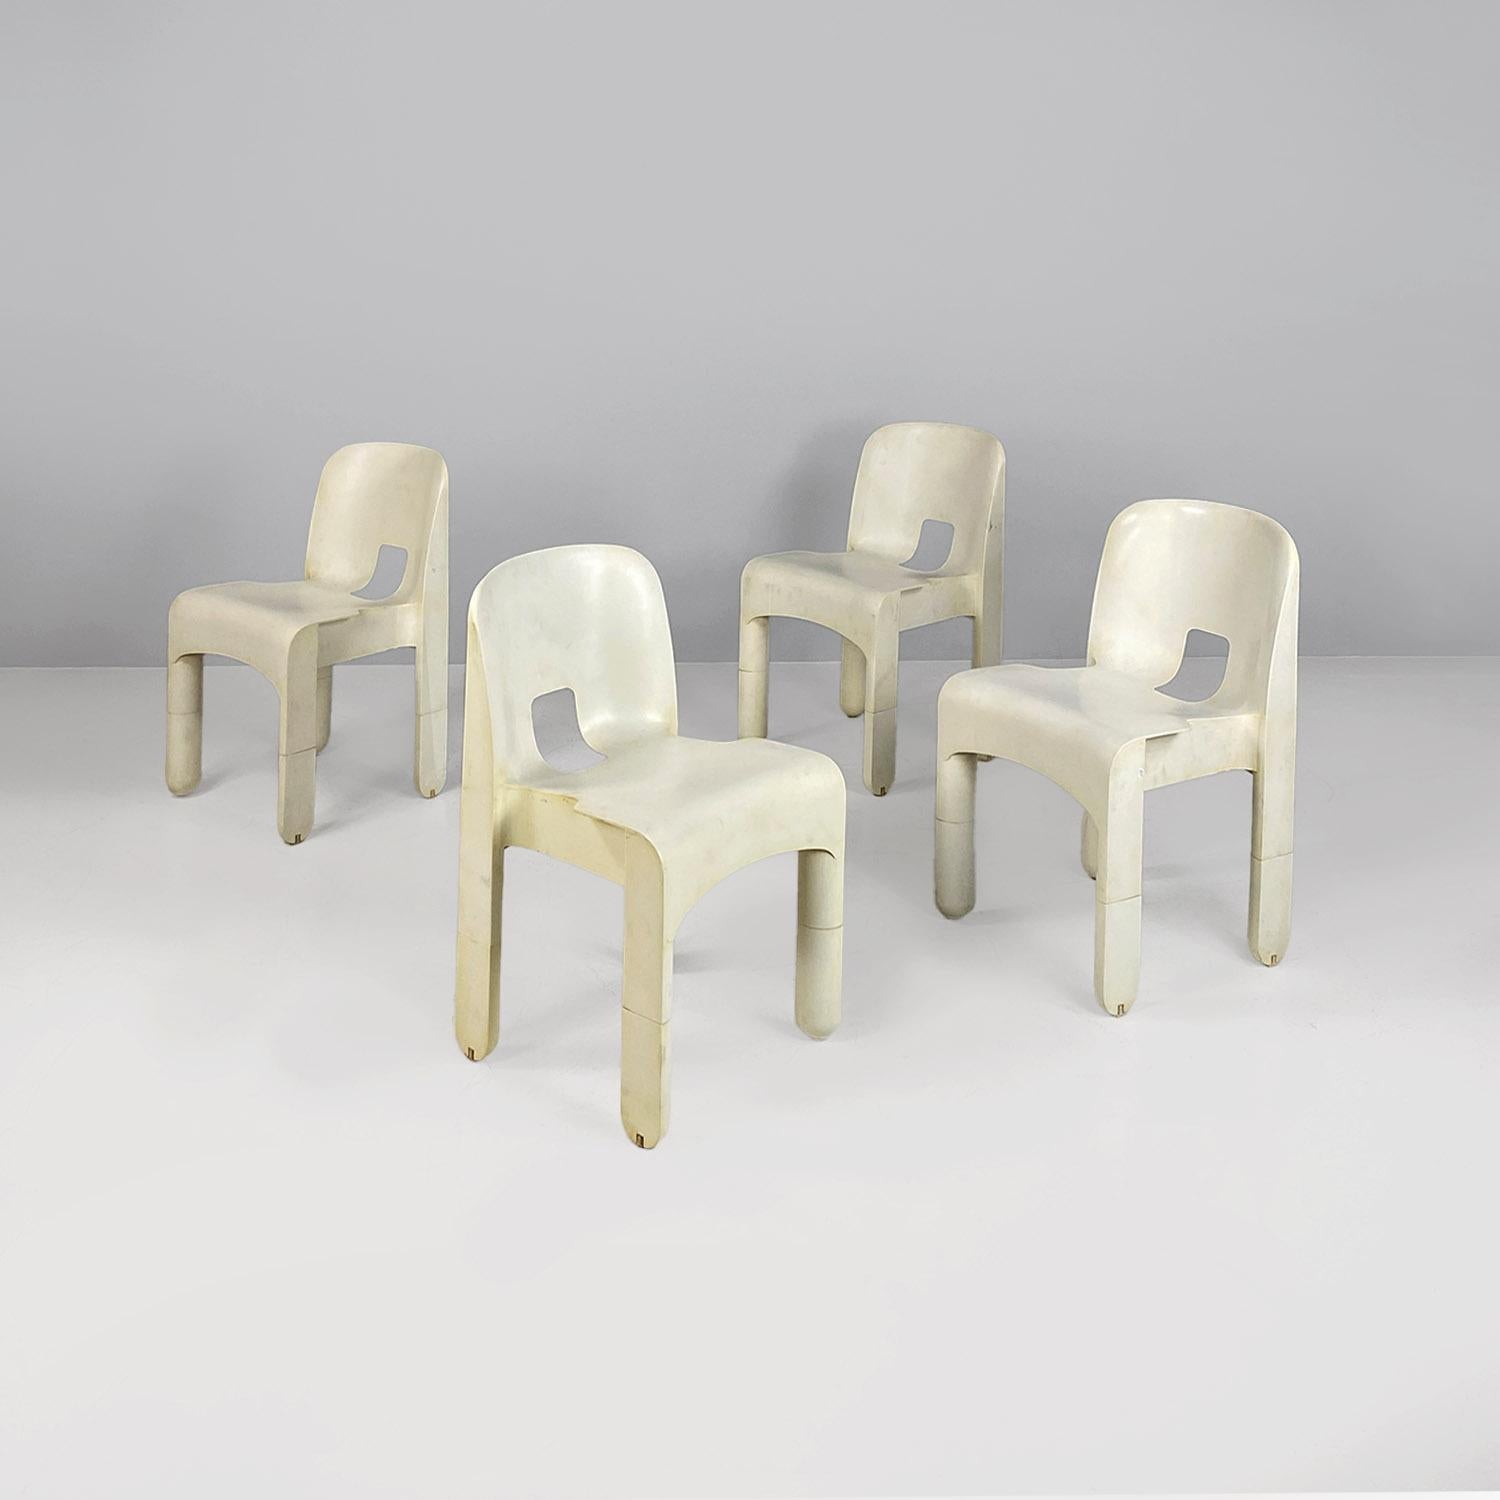 Chaises 860 Universale en plastique blanc de style moderne italien, Joe Colombo, Kartell, années 1970.
Ensemble composé de quatre chaises modèle 860, également connues sous le nom de Chaise Universale, en plastique ABS blanc crème. L'assise